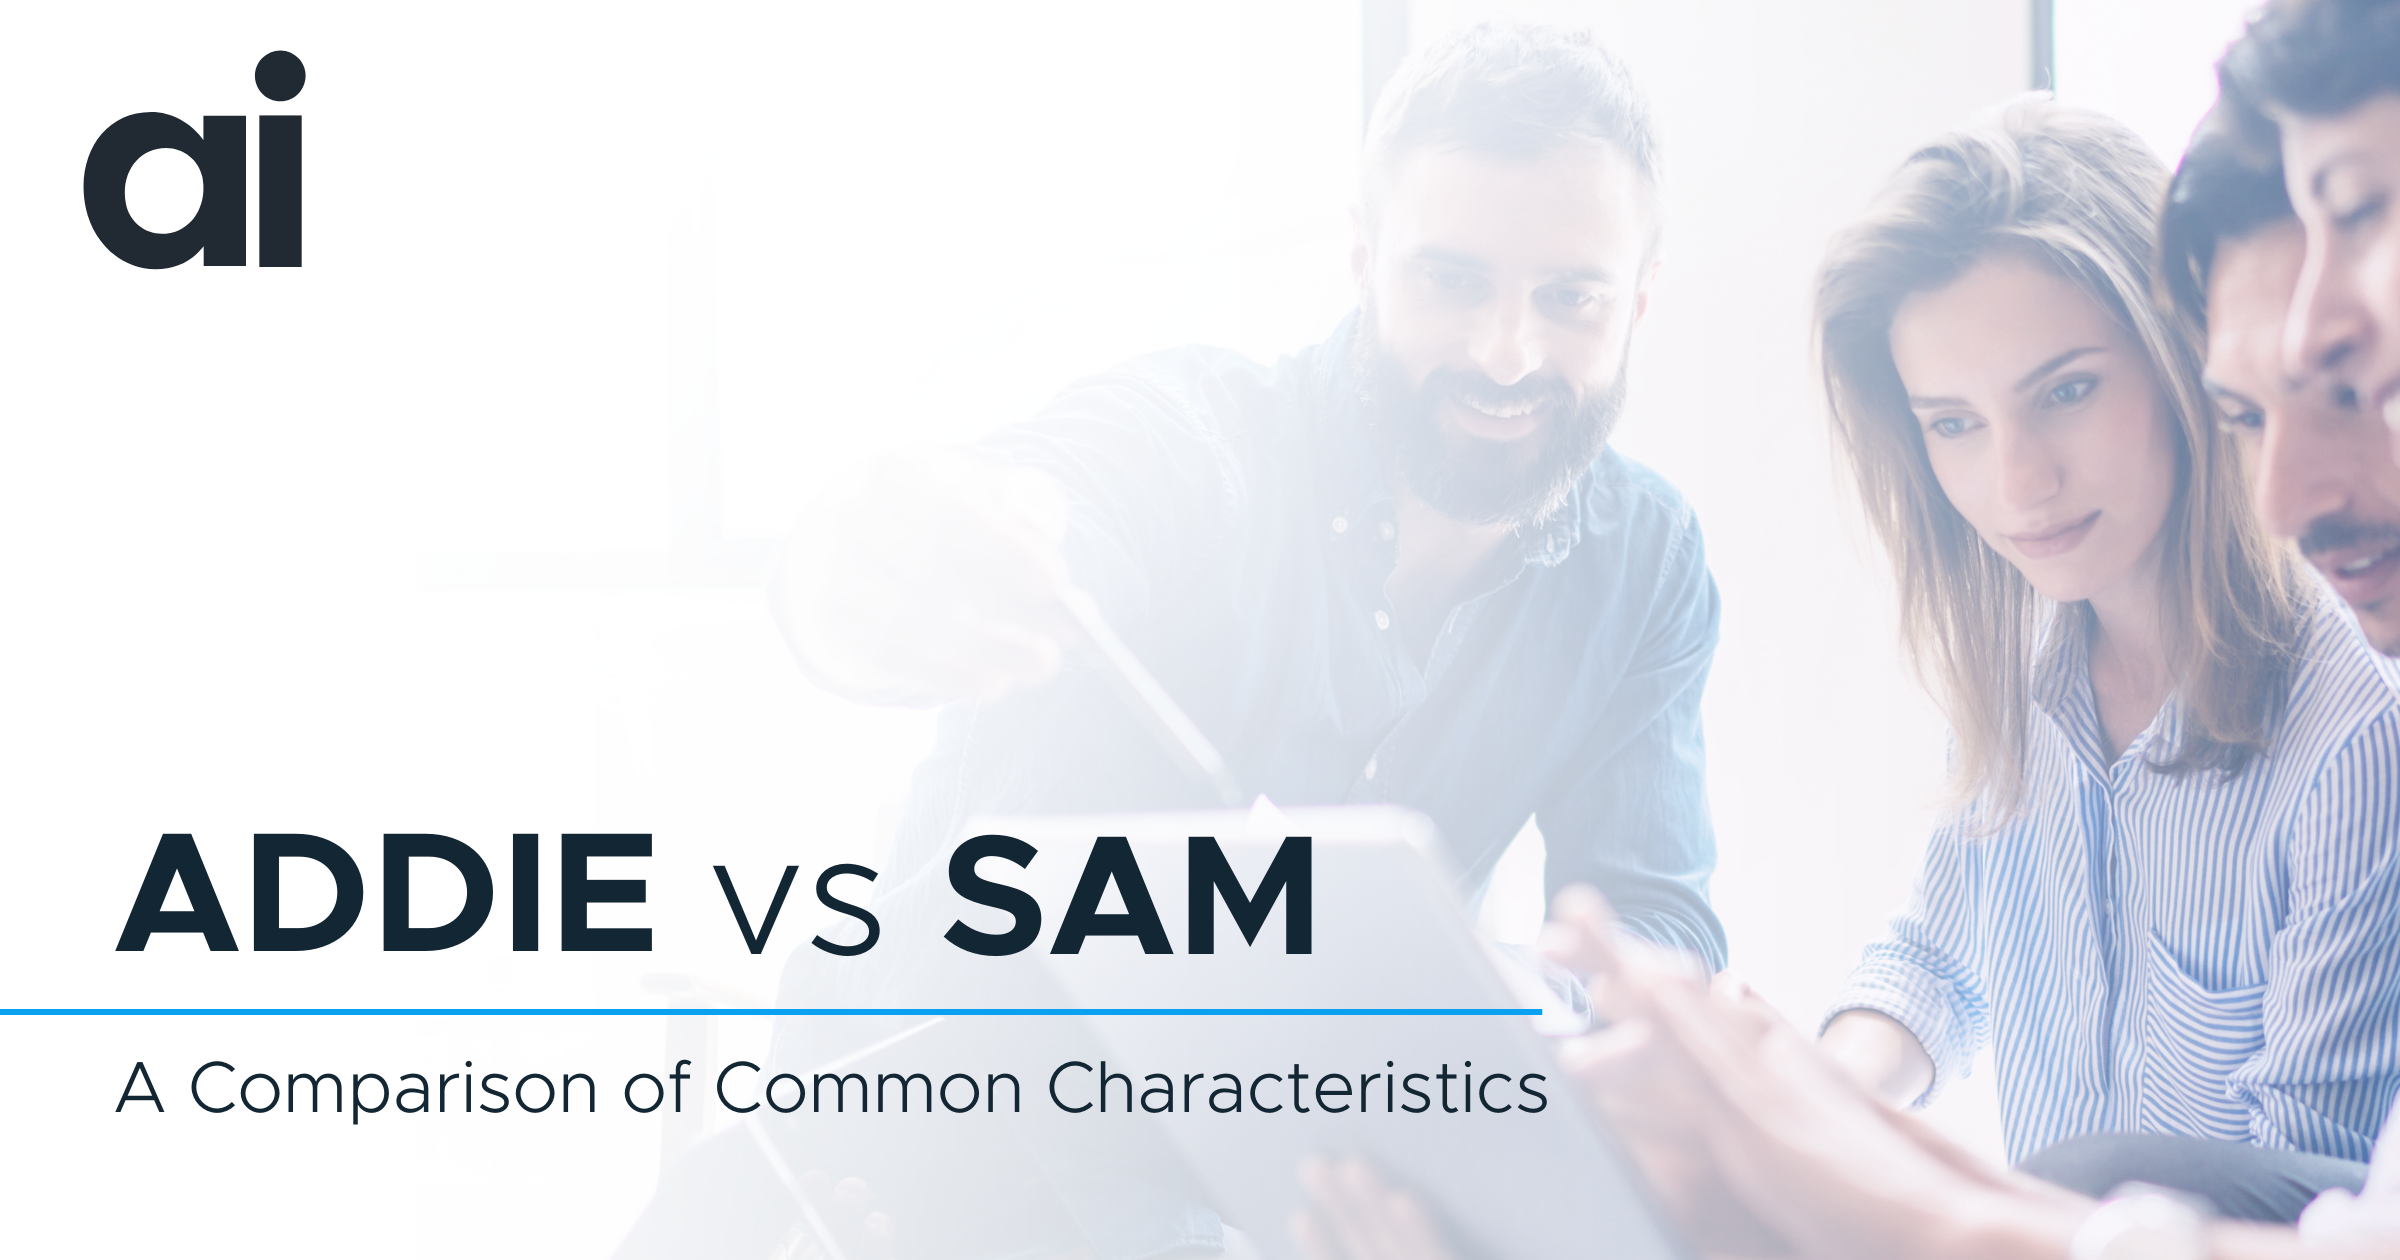 ADDIE vs SAM: A Comparison of Common Characteristics